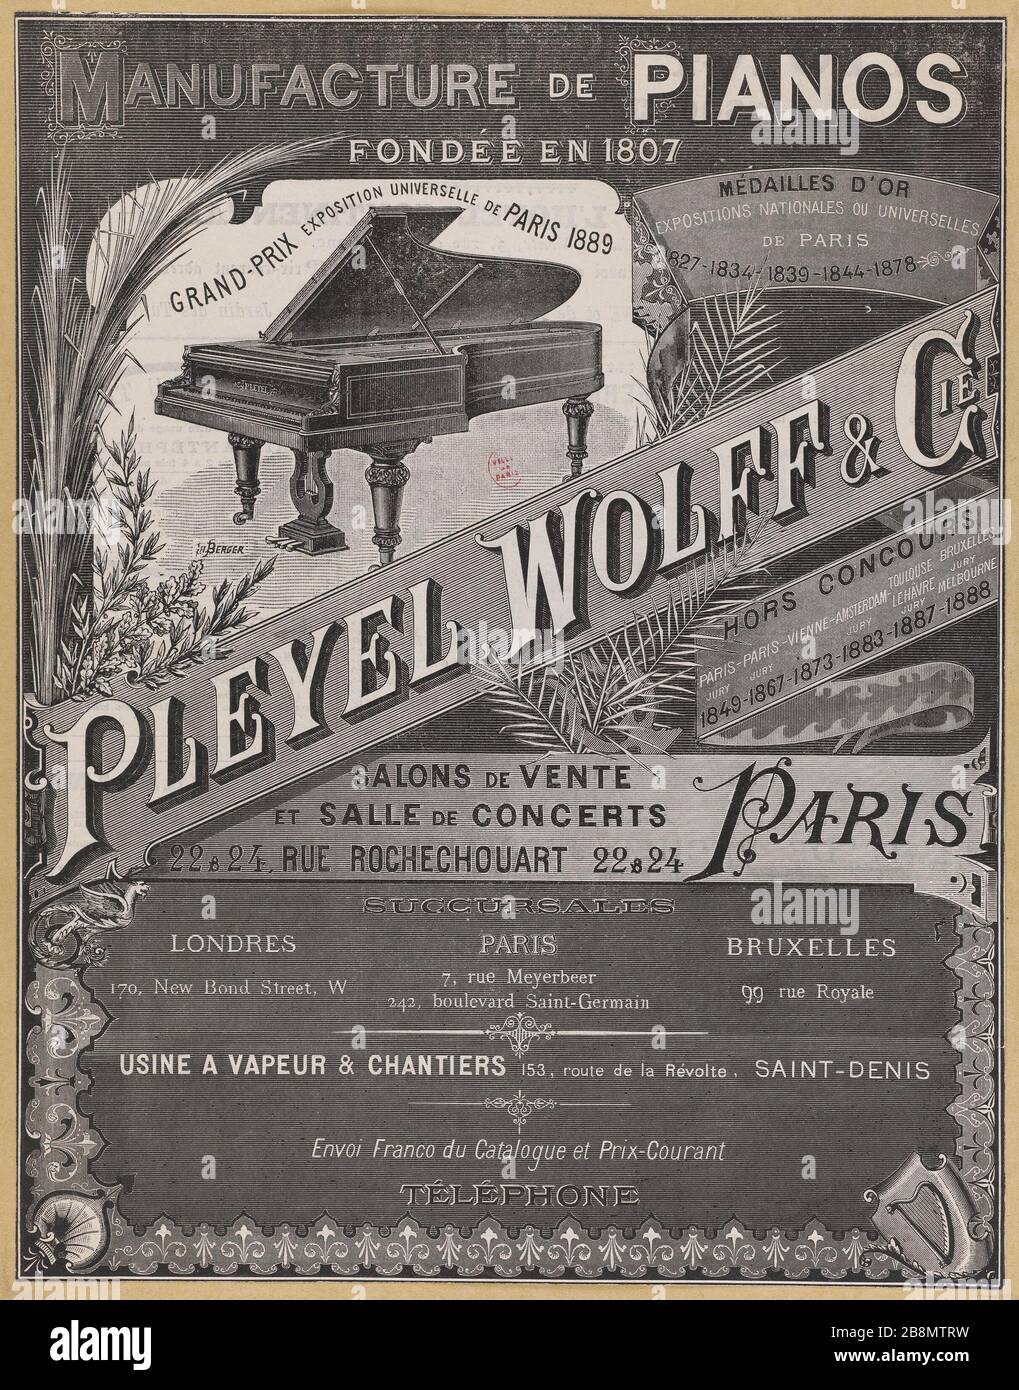 Pleyel manufacture de piano Banque de photographies et d'images à haute  résolution - Alamy